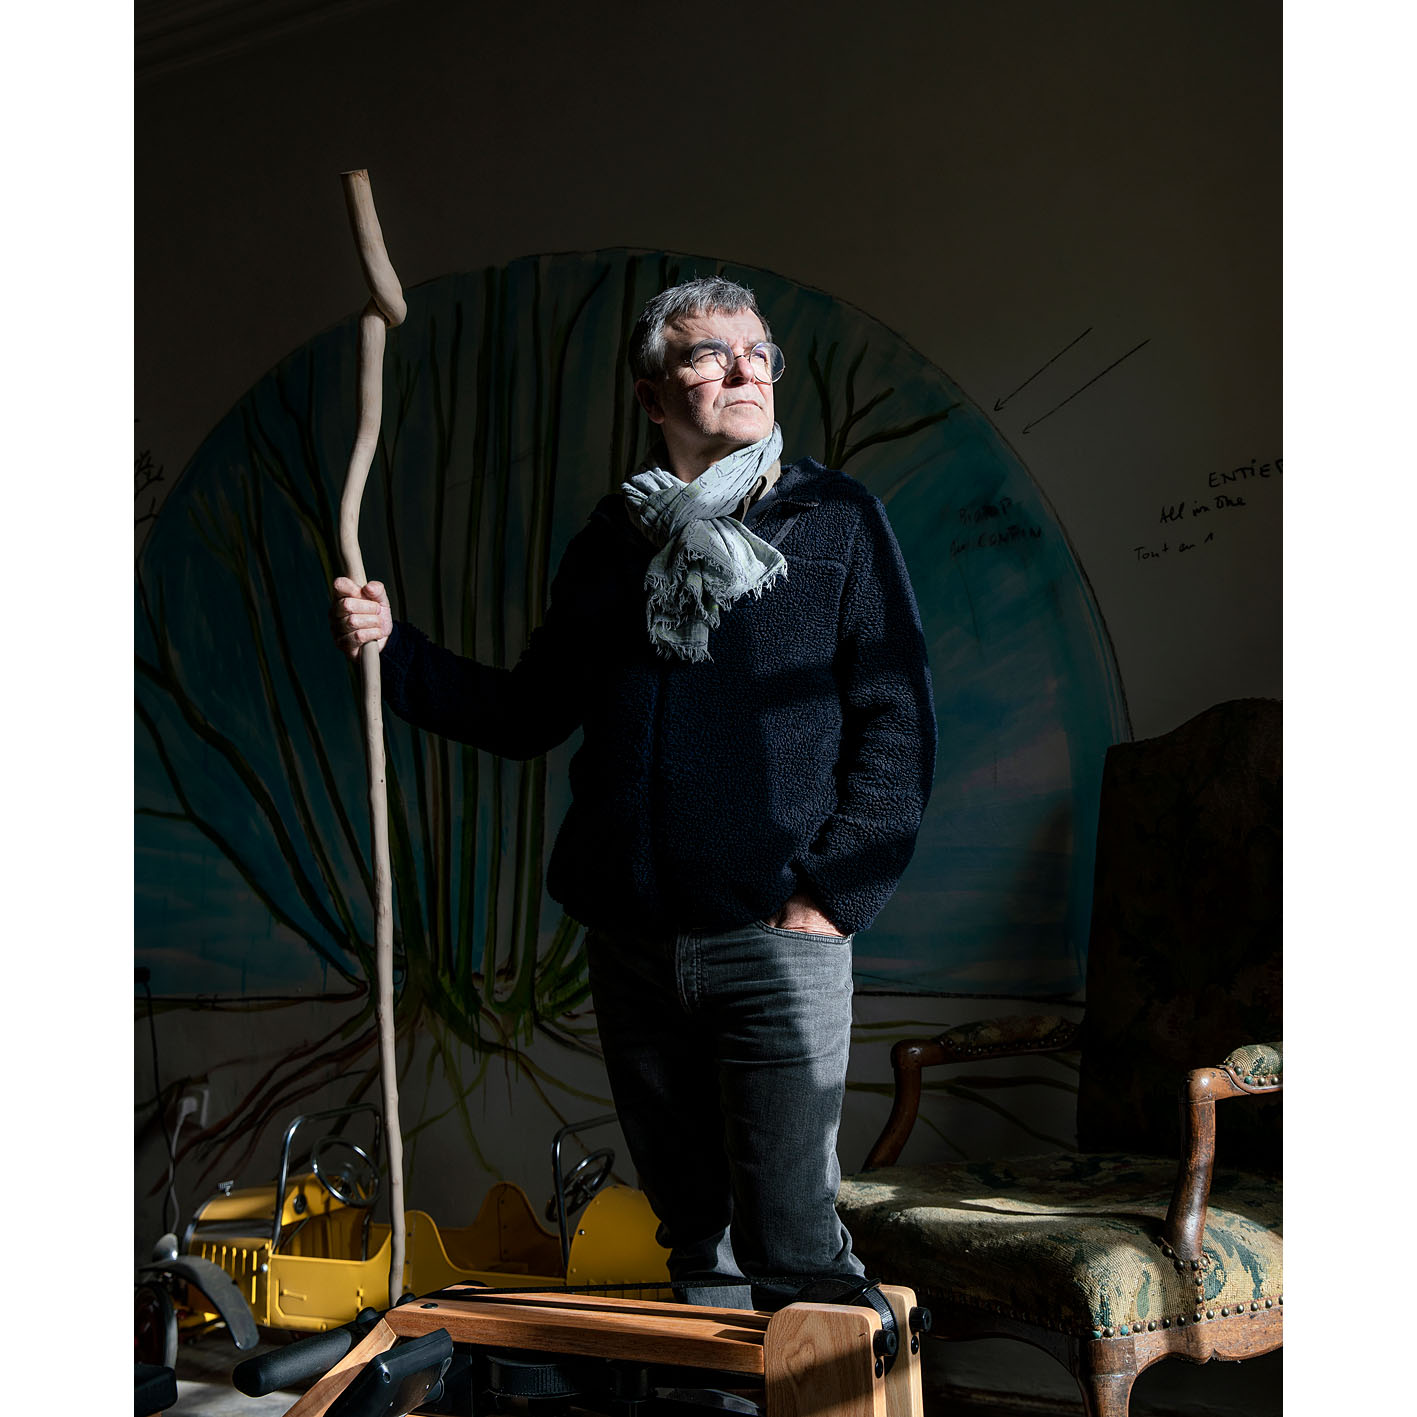 Fabrice Hyber chez lui en Vendée. Sculpté dans une branche de cormier, un bâton de marche choisi à la place de la traditionnelle épée pour son entrée à l'Académie des beaux-arts.